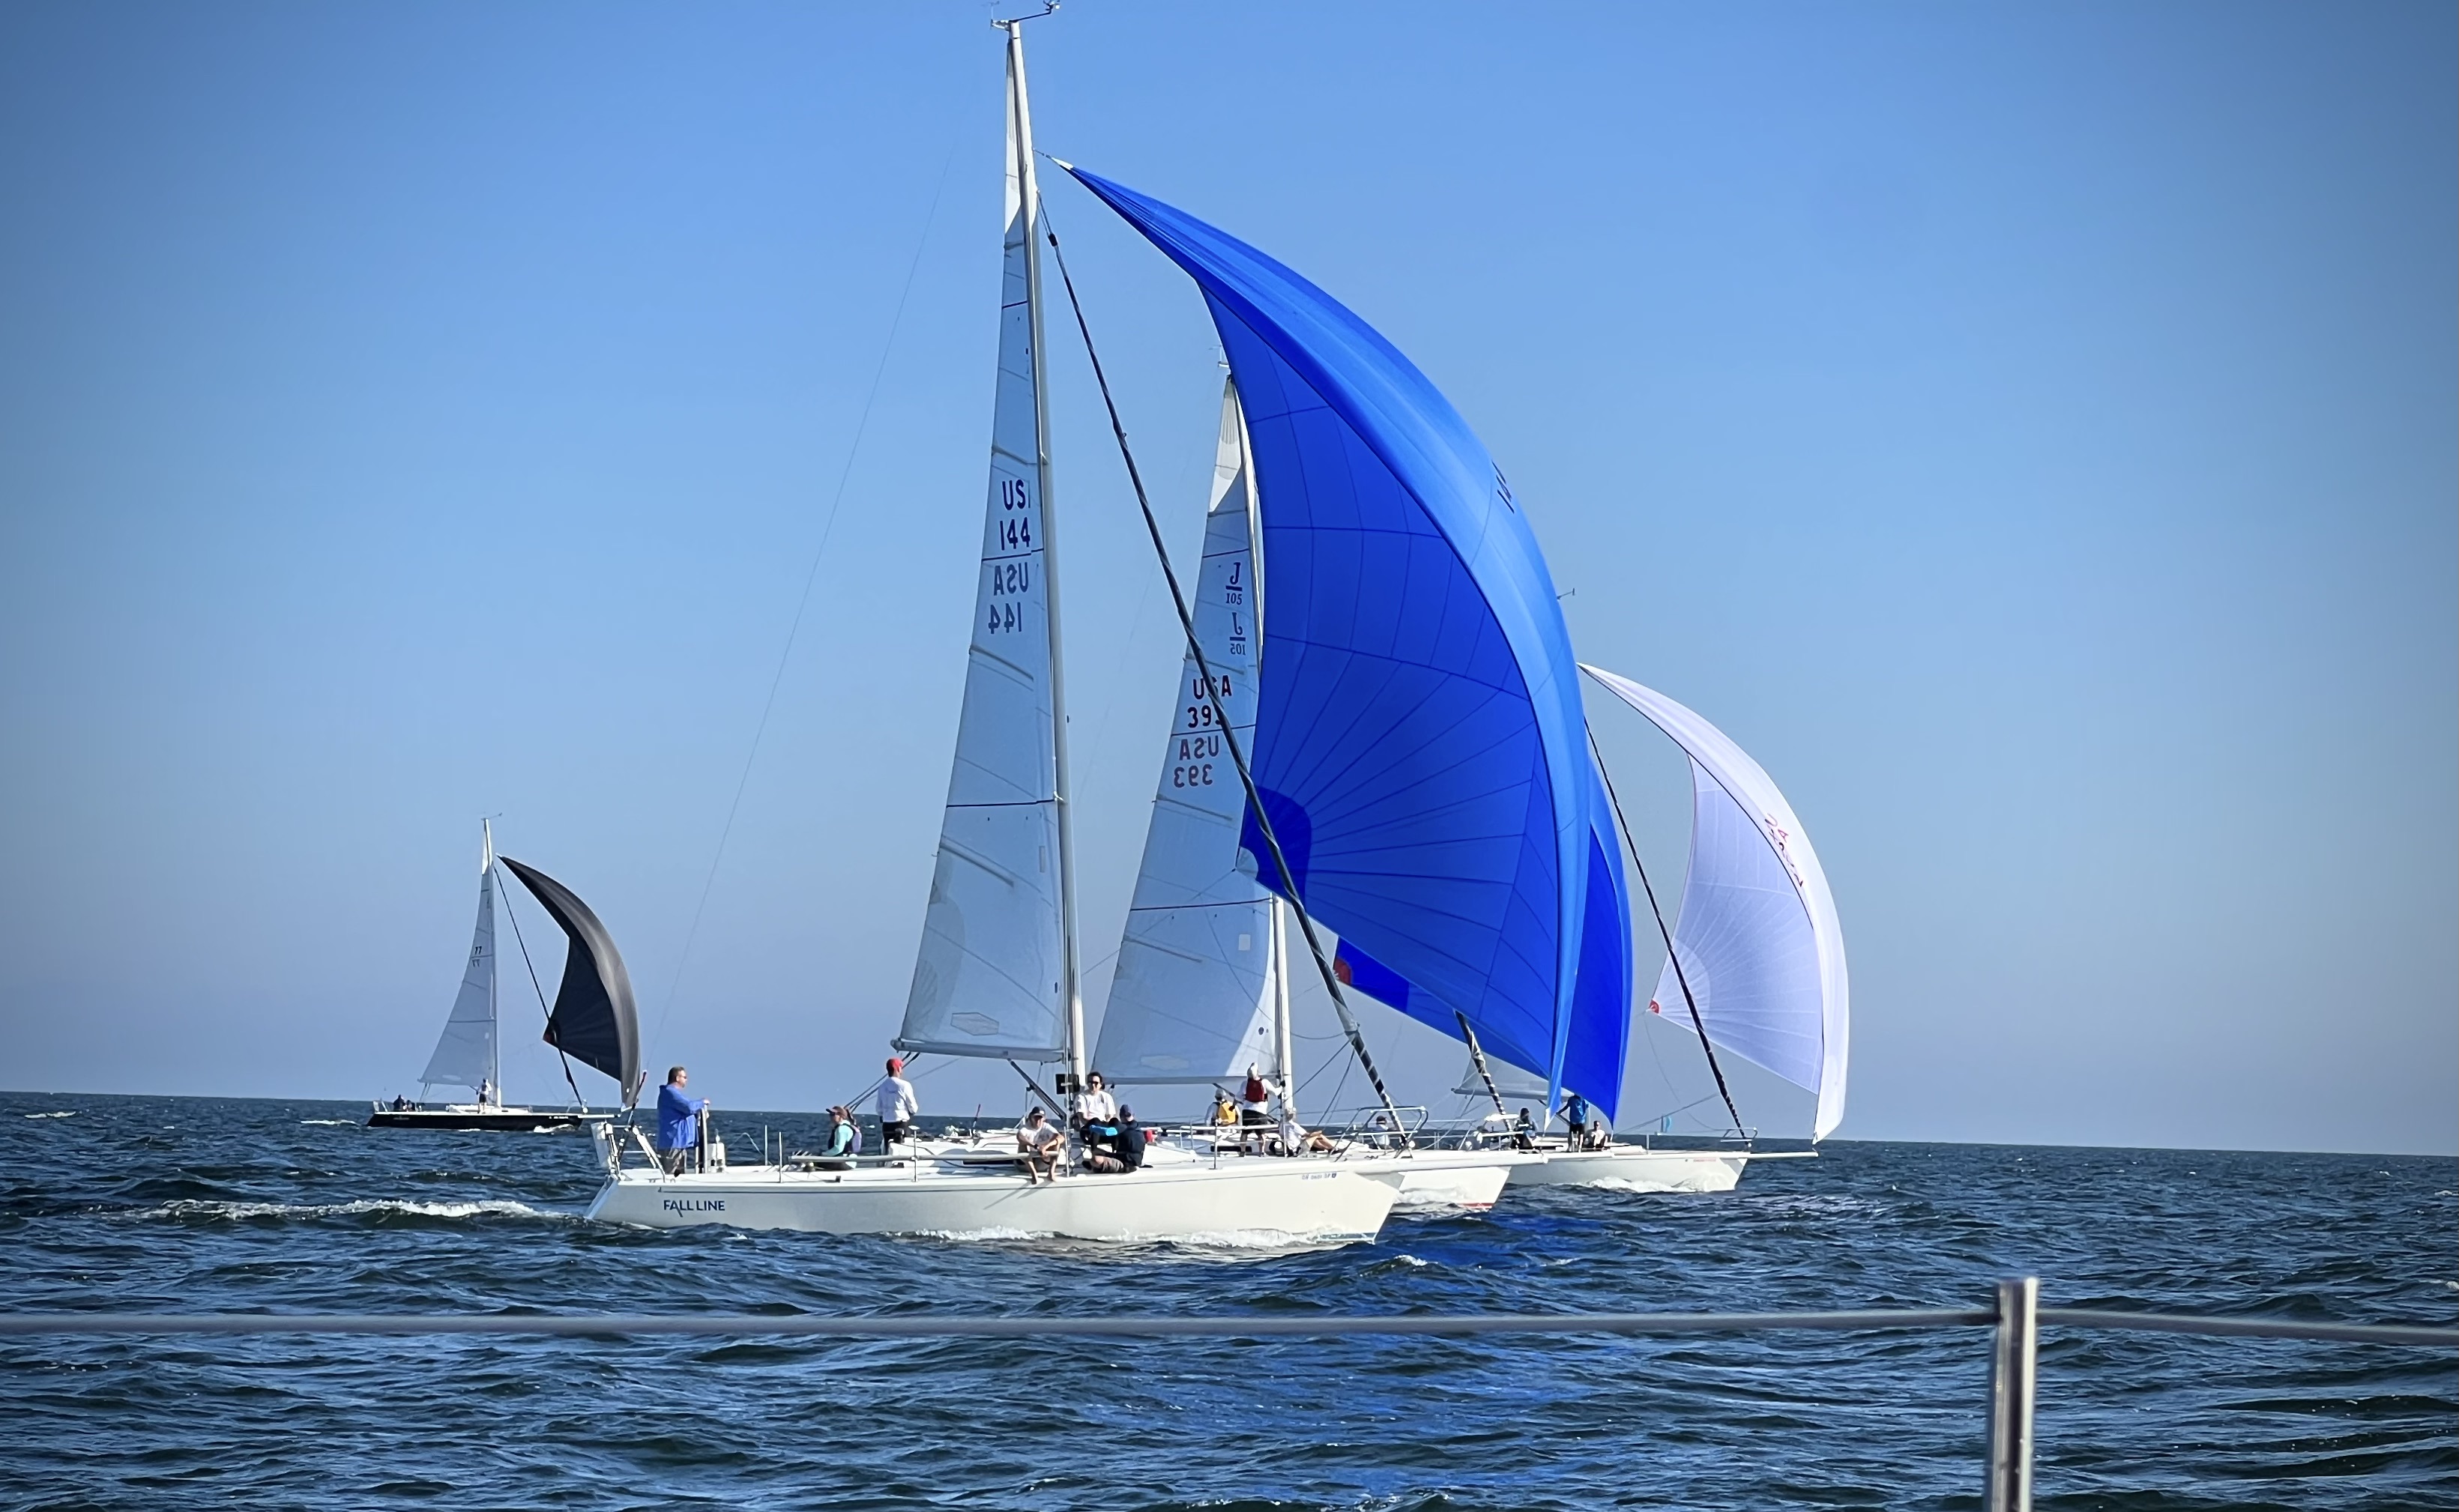 Sailboats racing on Lake Erie